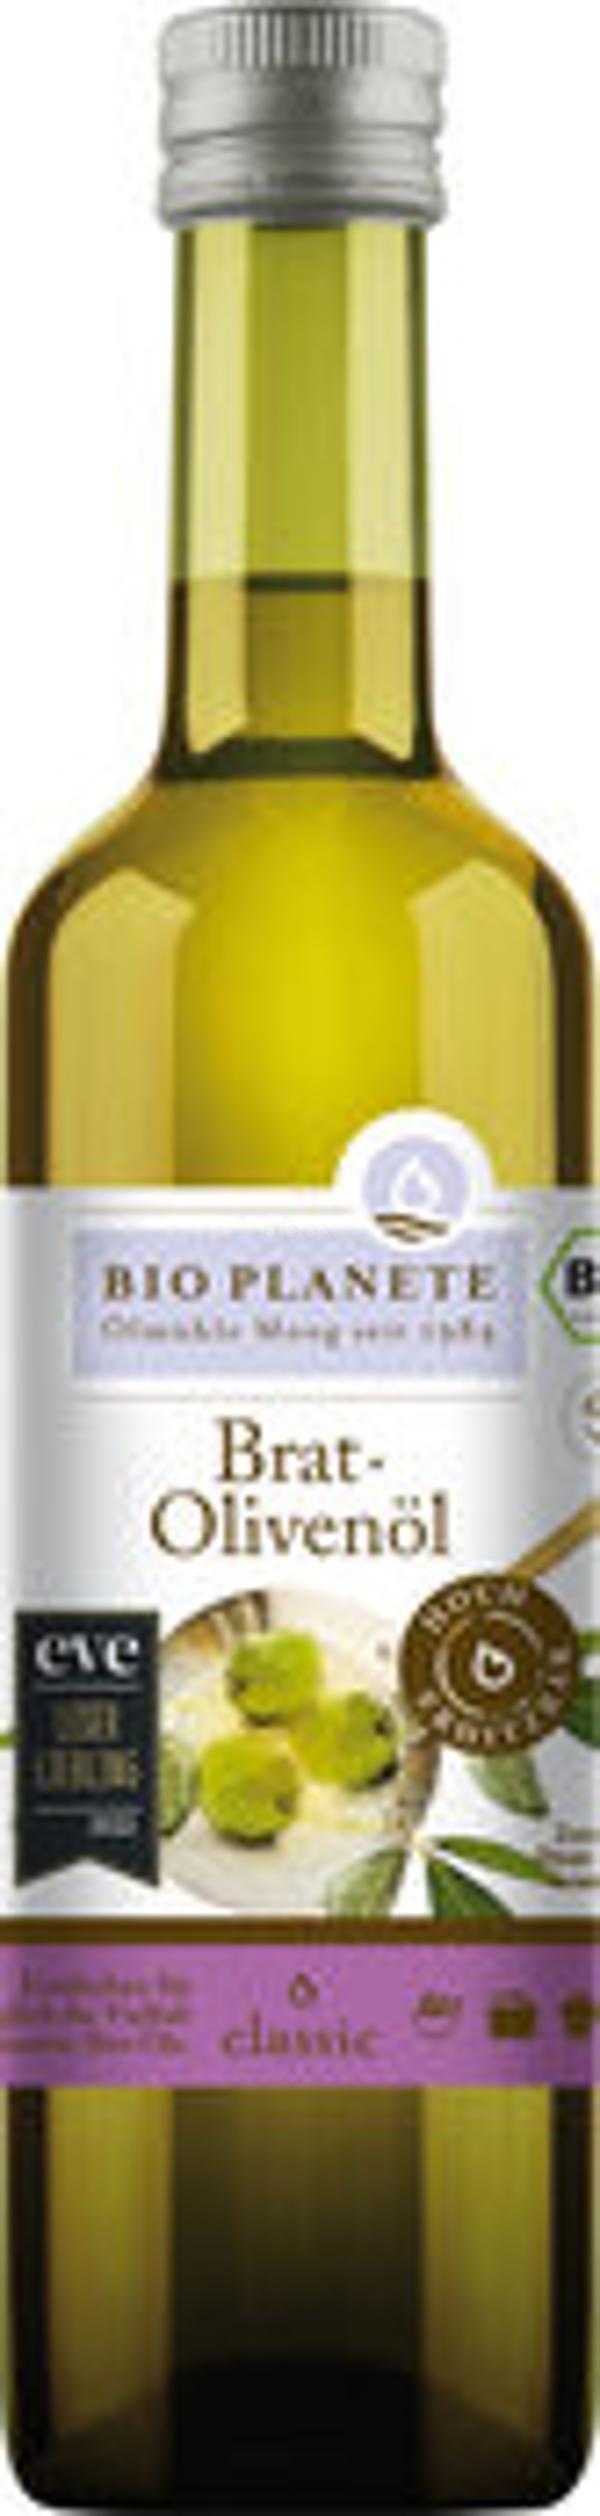 Produktfoto zu Brat-Olivenöl